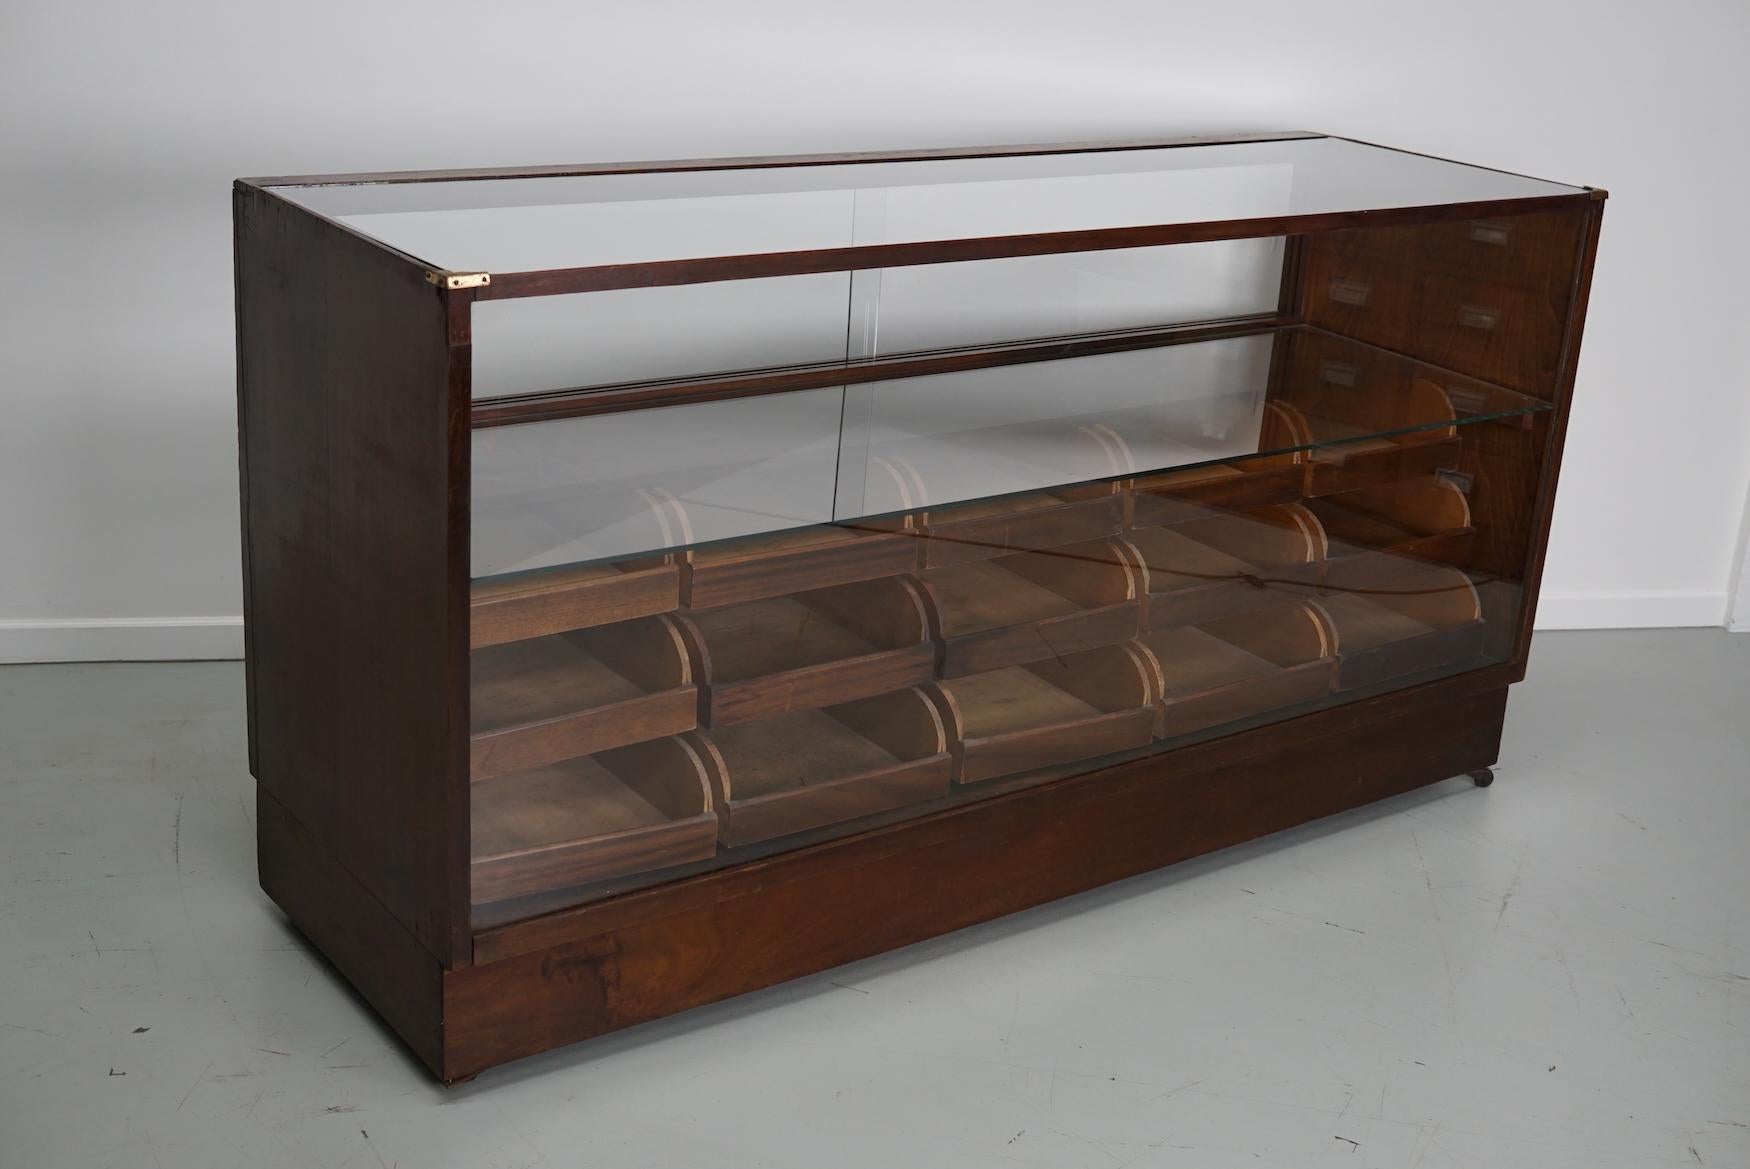 Dieser Vintage-Kurzwarenladentisch aus Mahagoni stammt aus den 1940er Jahren und wurde in England hergestellt. Es besteht aus einem massiven Rahmen mit furnierten Seiten, einem Glasgehäuse und Schubladen aus Mahagoni mit Kupfergriffen. Die